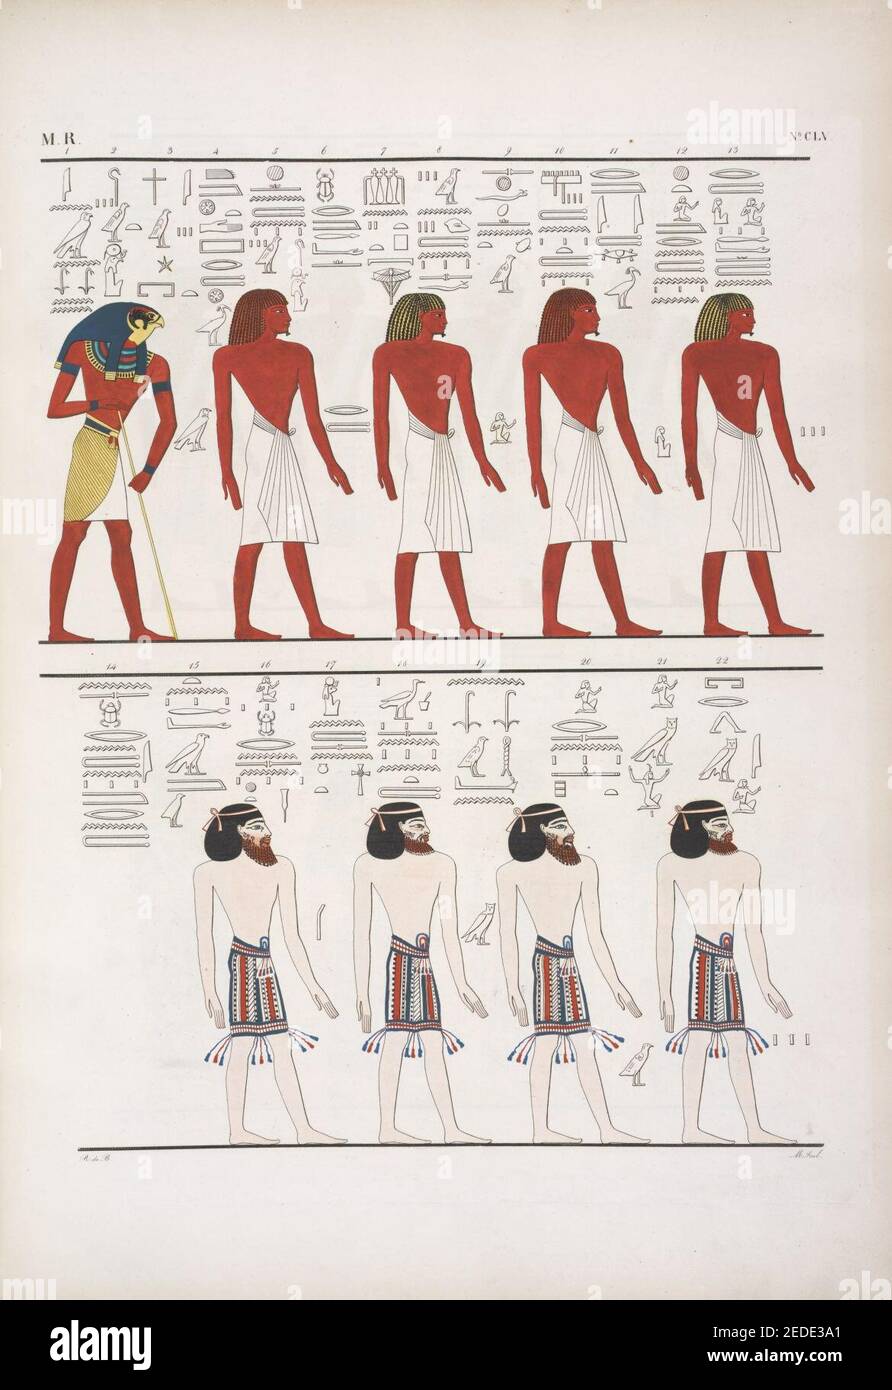 Le diverse specie di uomini noti agli Egizi, rappresentati nella tomba di Menphtah I (Seti I) I primi figurano li stessi Egiziani; e a tutti succede il dio Horus custode dell'umana stirpe Stock Photo